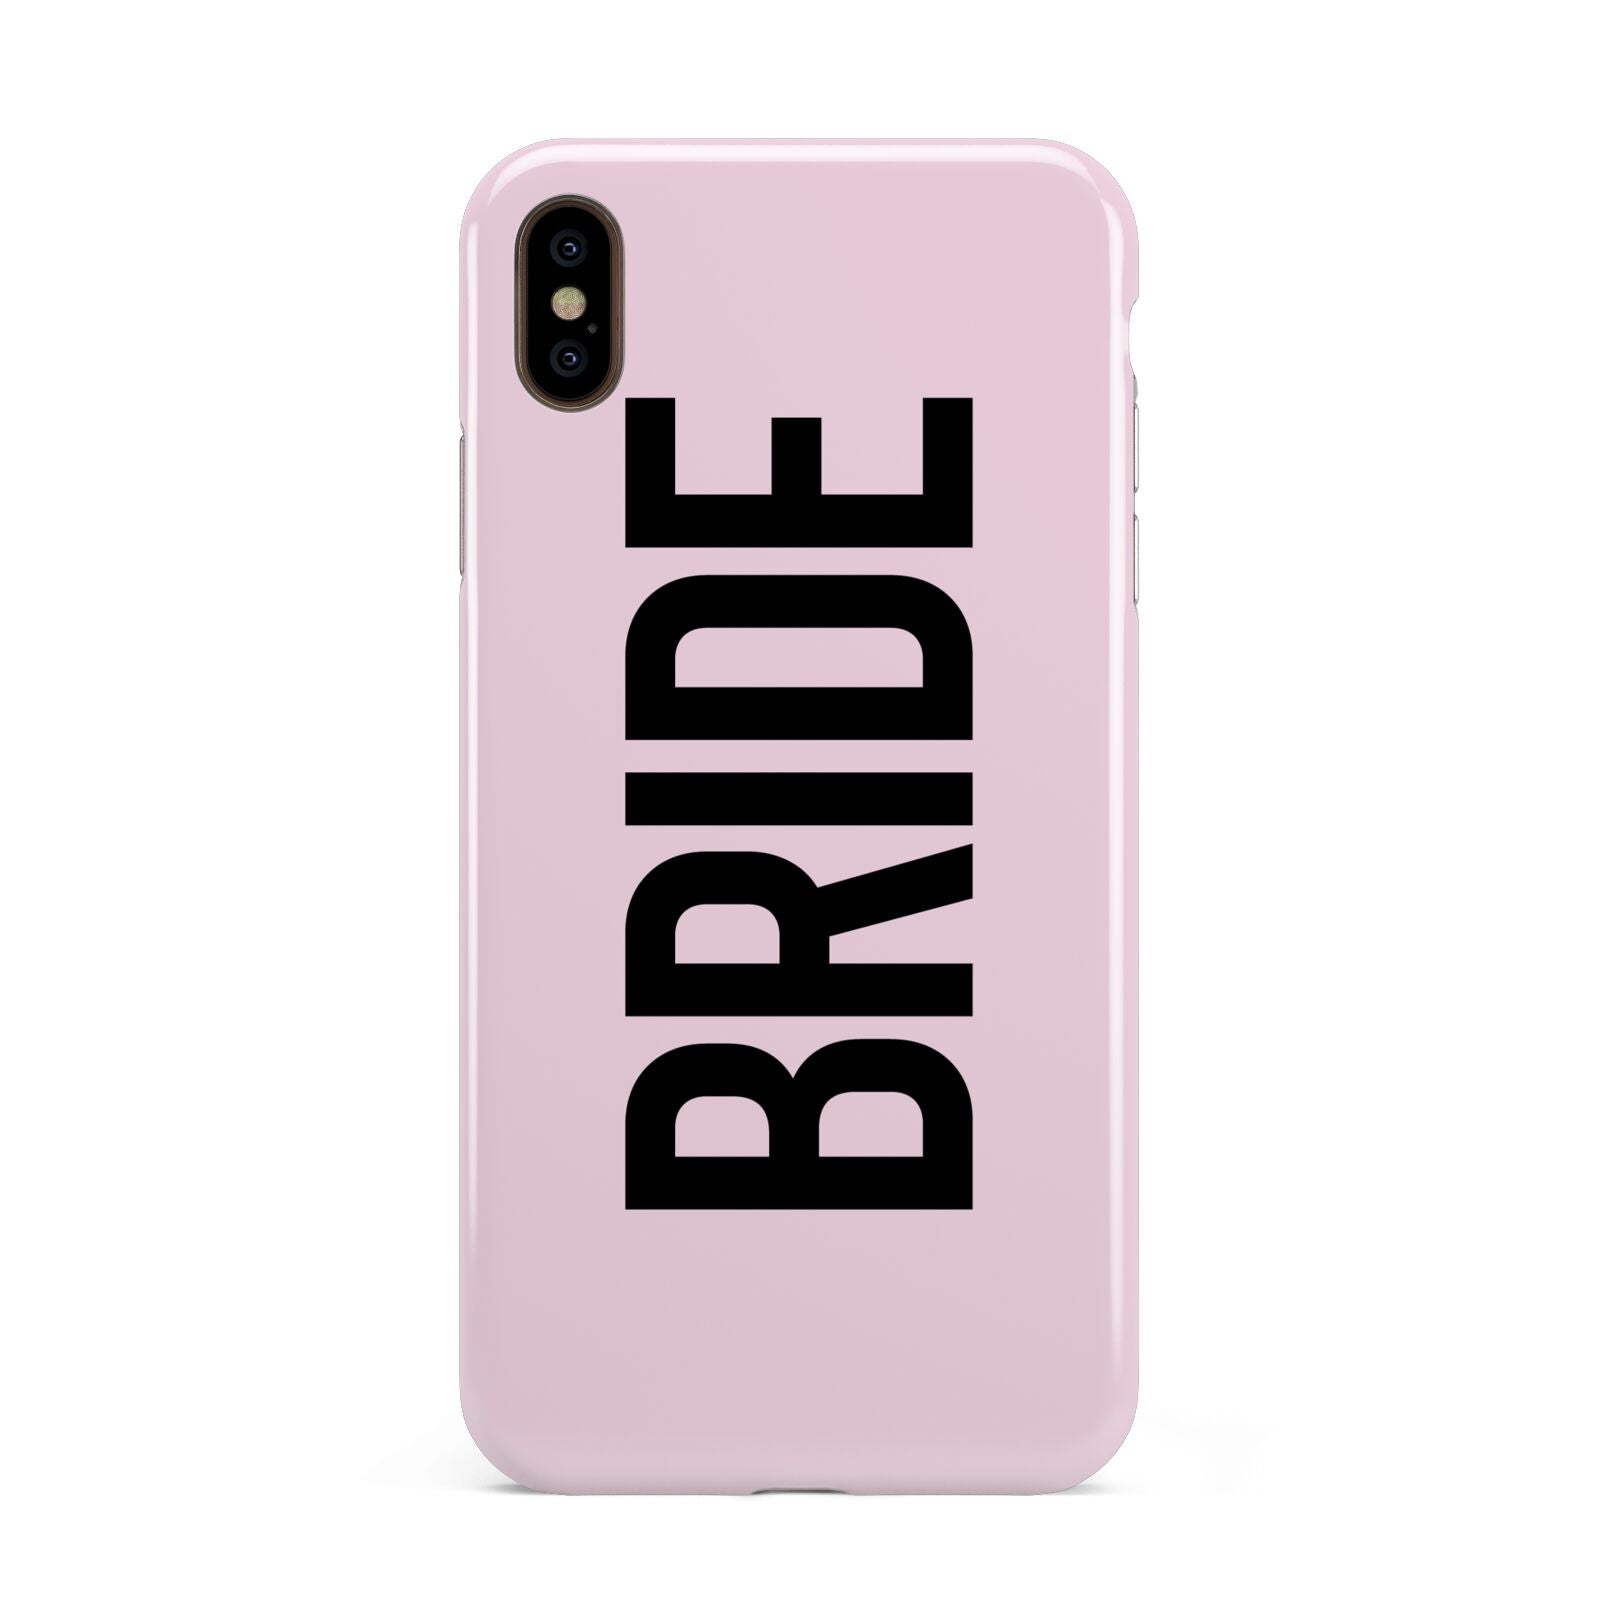 Bride Apple iPhone Xs Max 3D Tough Case